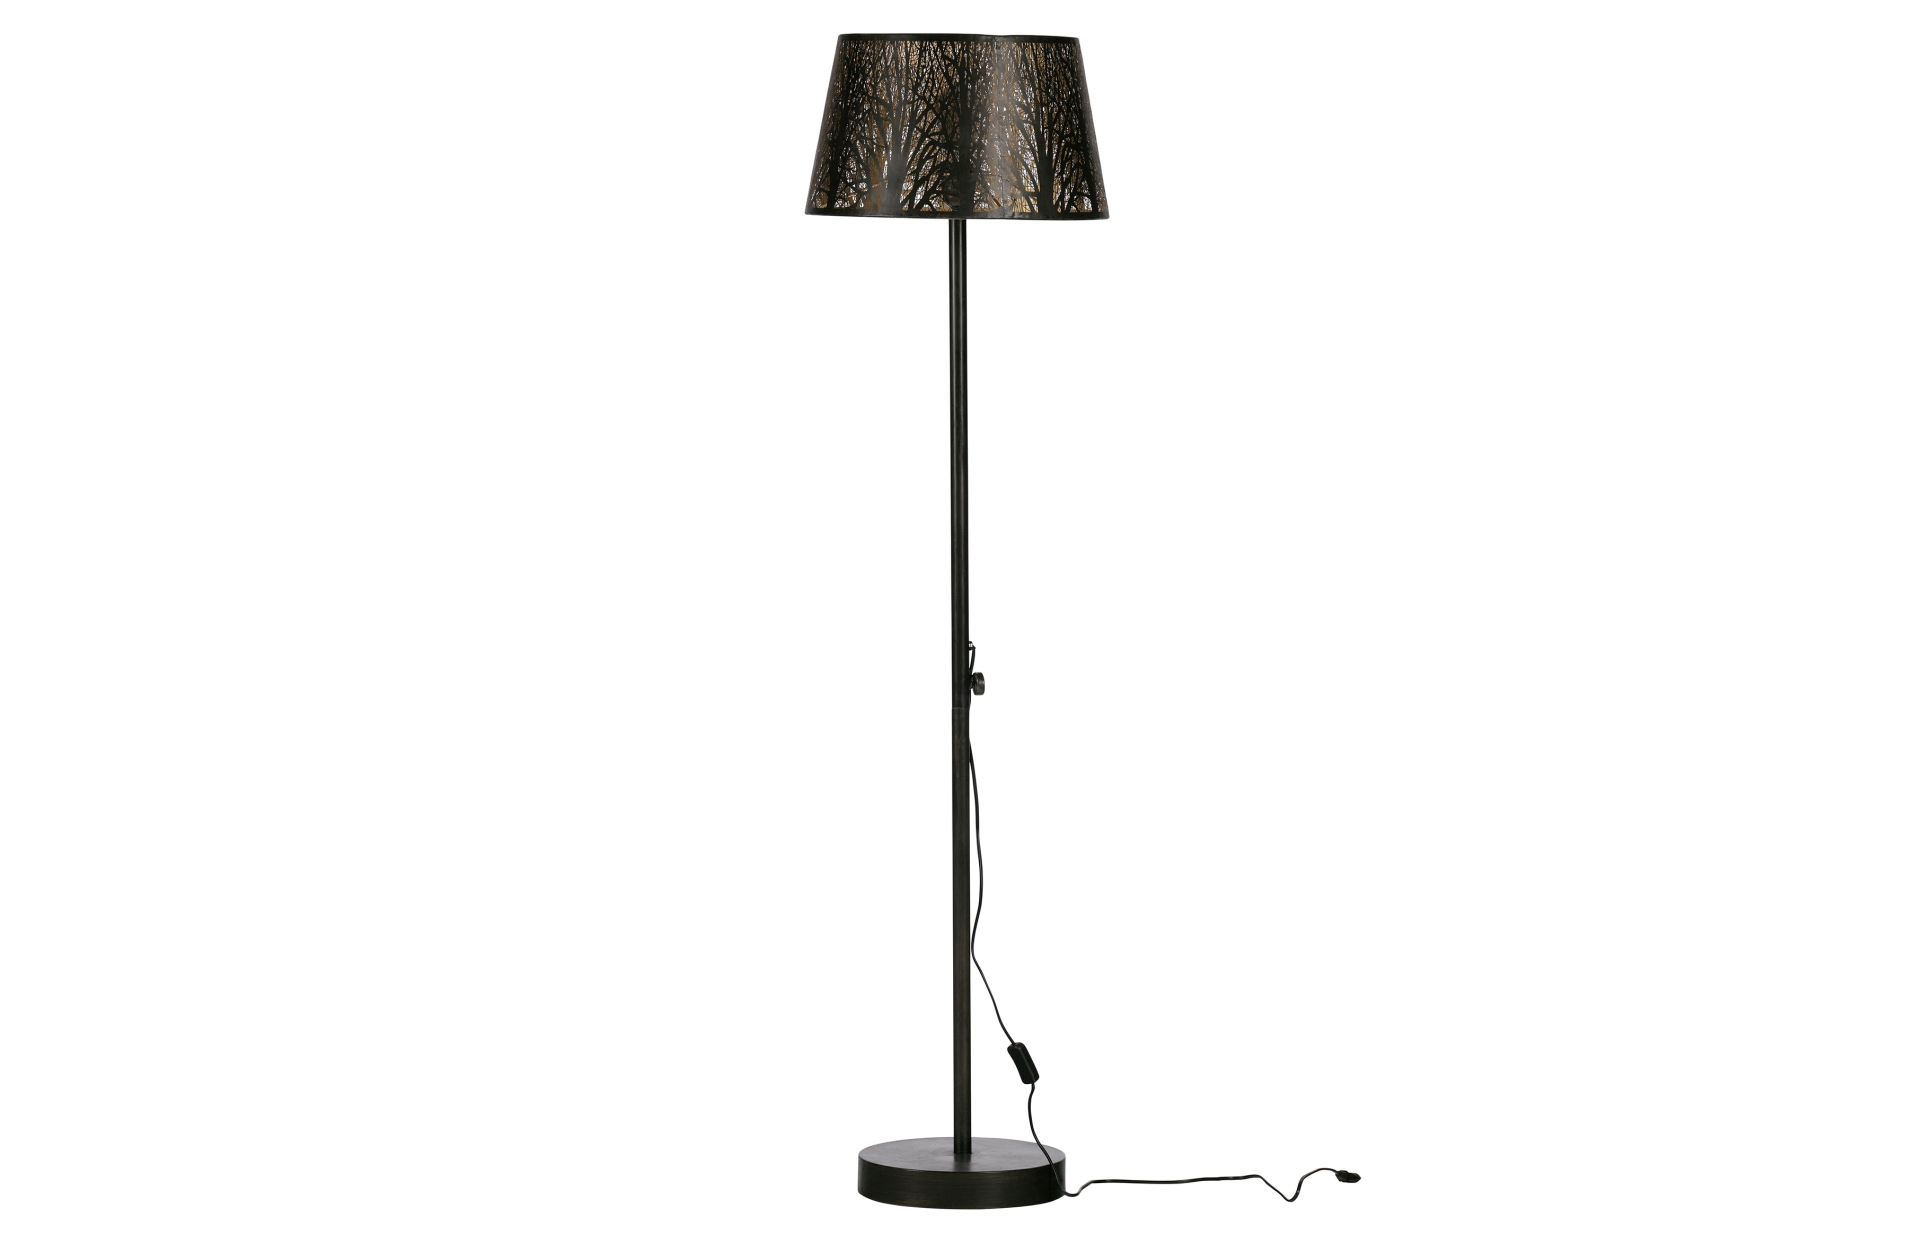 Die Stehleuchte Keto ist ein echter Hingucker. Gefertigt wurde die Lampe aus Metall, welches ein schwarzen Farbton besitzt. Dies unterstreicht das moderne Design der Lampe.